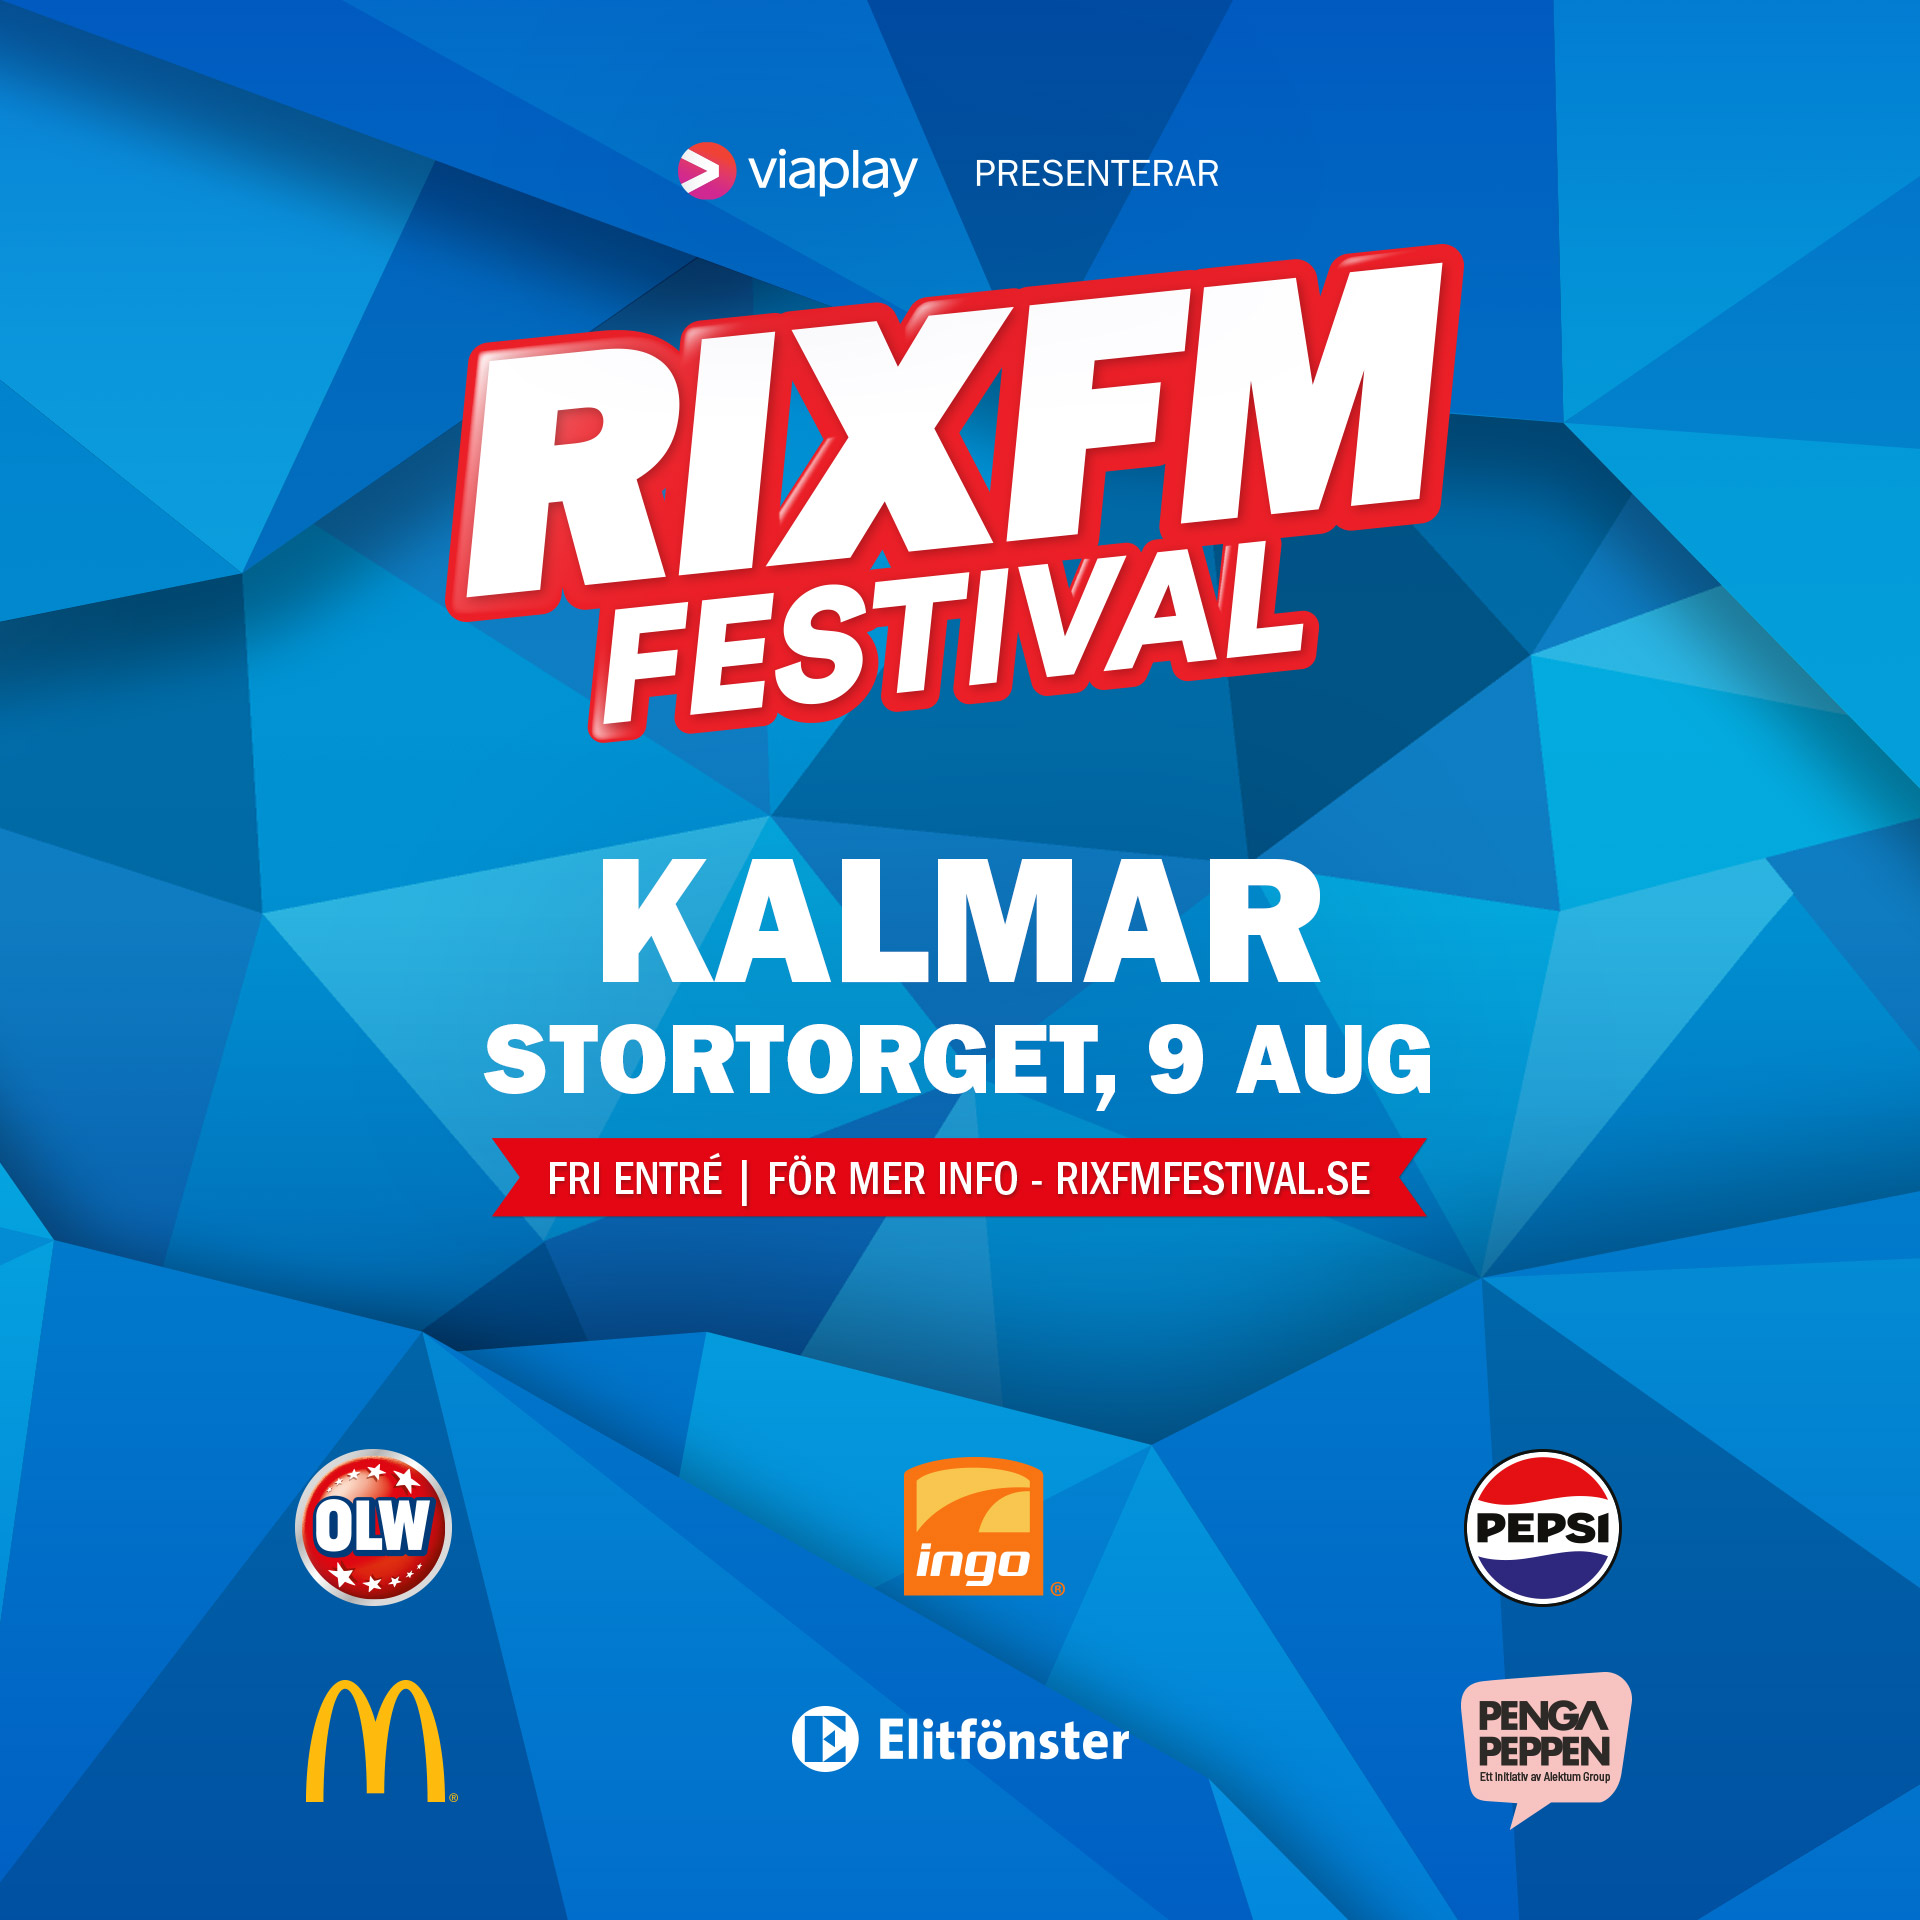 RIX FM Festival